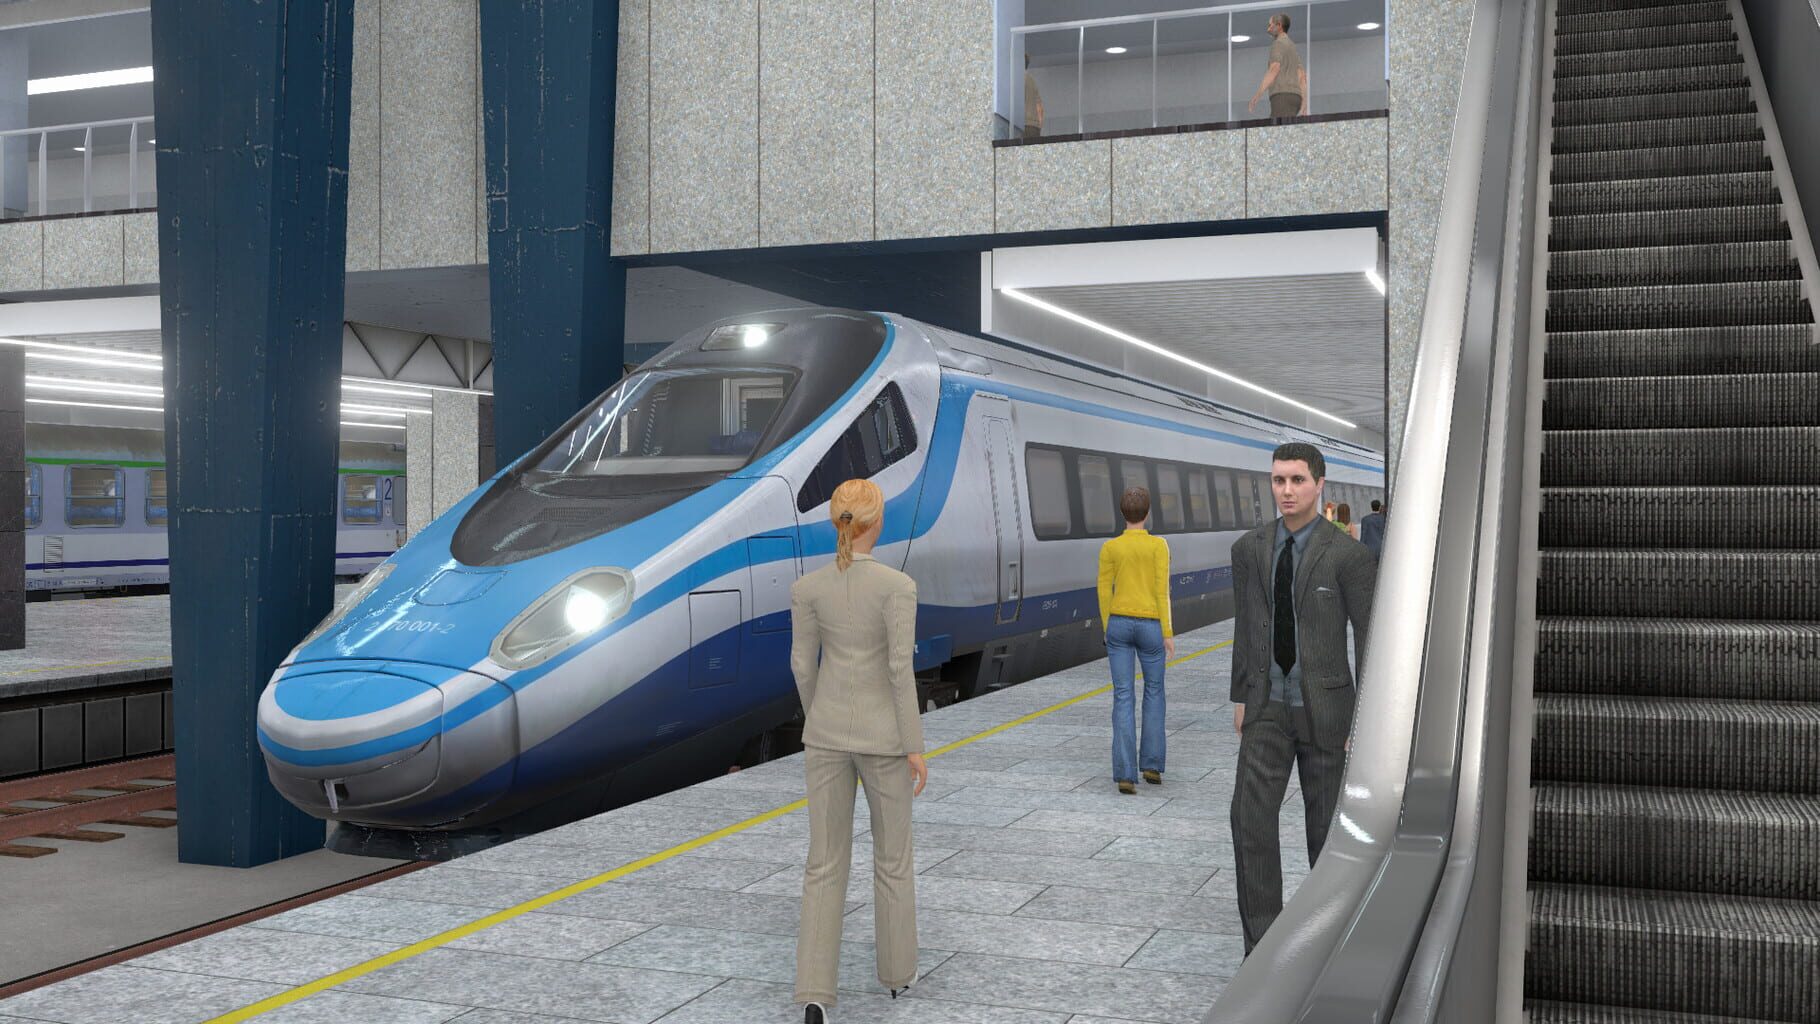 Captura de pantalla - SimRail: The Railway Simulator